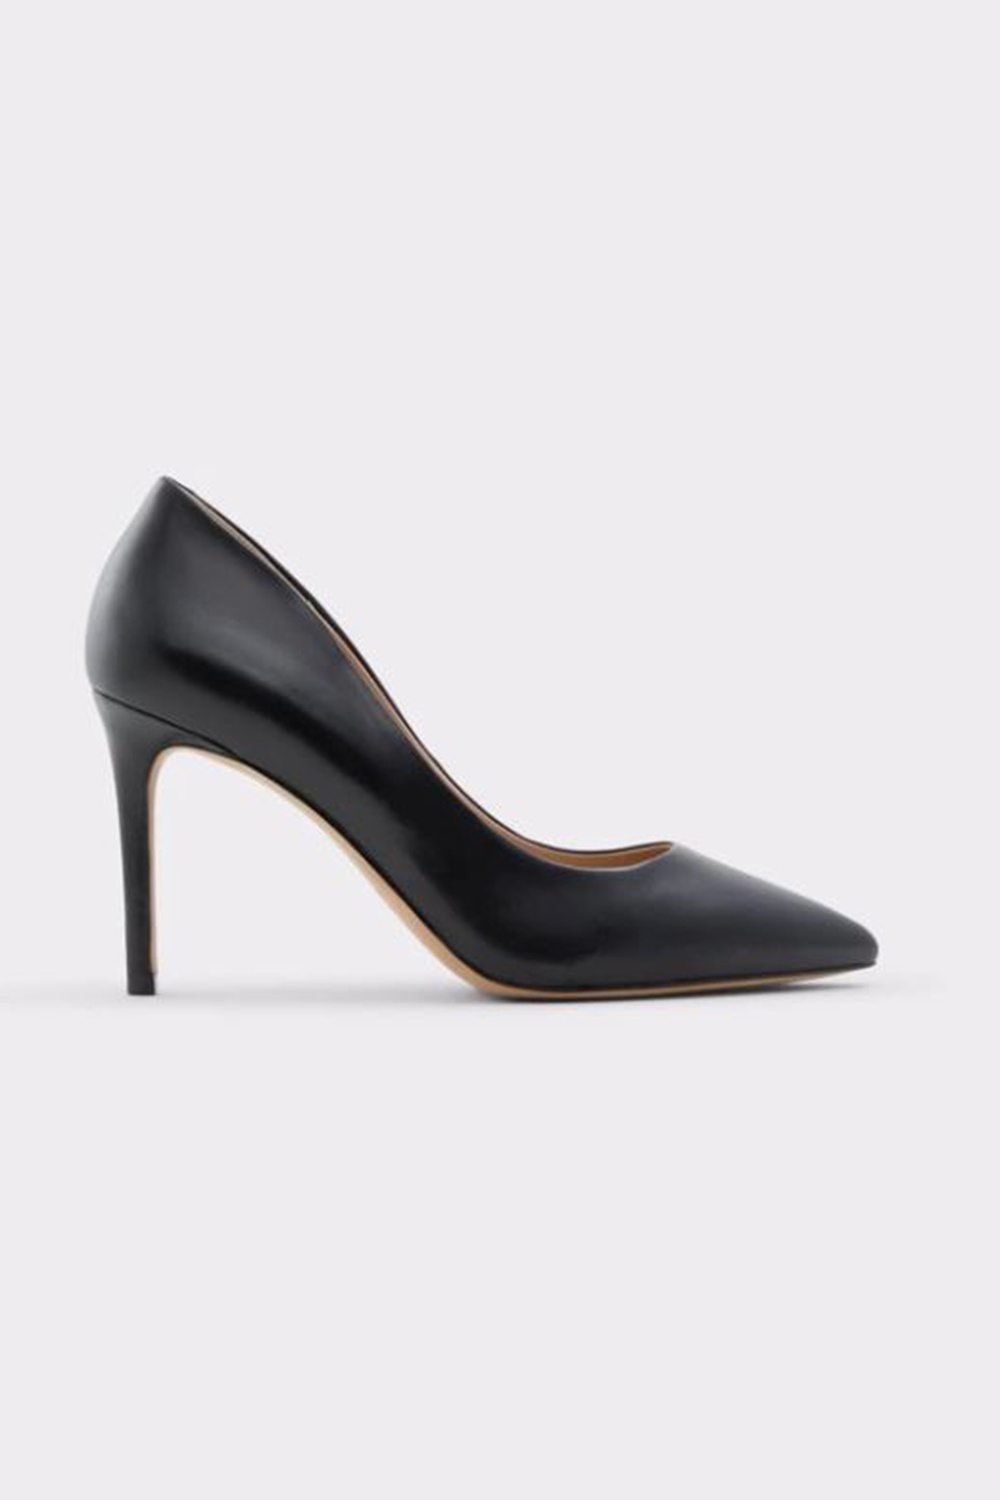 Aldo Thendan Black Women's Leather Heels | Odel.lk